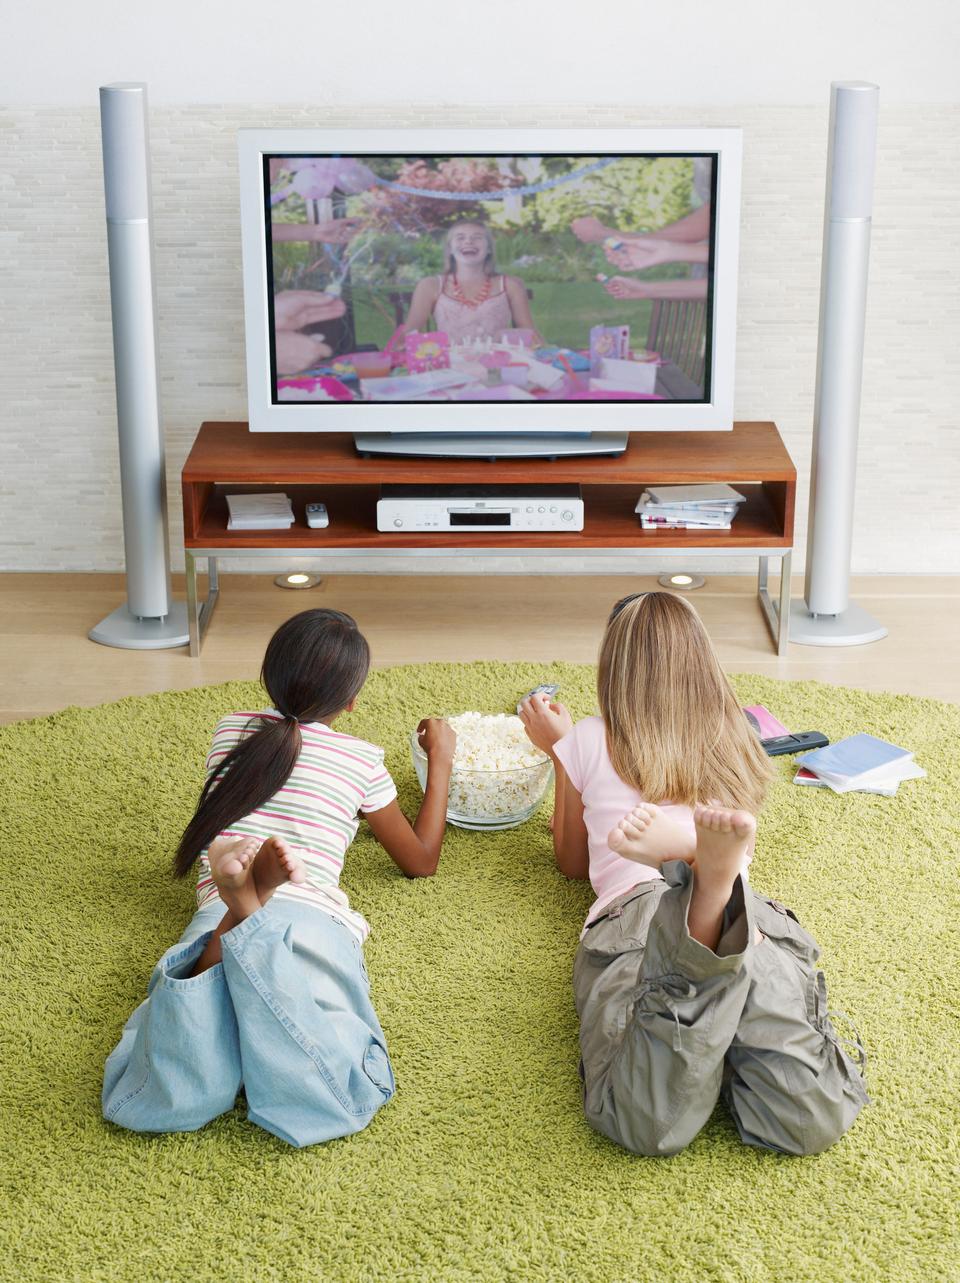 يمكن أن يكون التلفاز جزءاً من طفولة صحيّة، وما دام لم يتم إساءة استخدامه فهو يؤدي دوراً كبيراً في تربية الأطفال